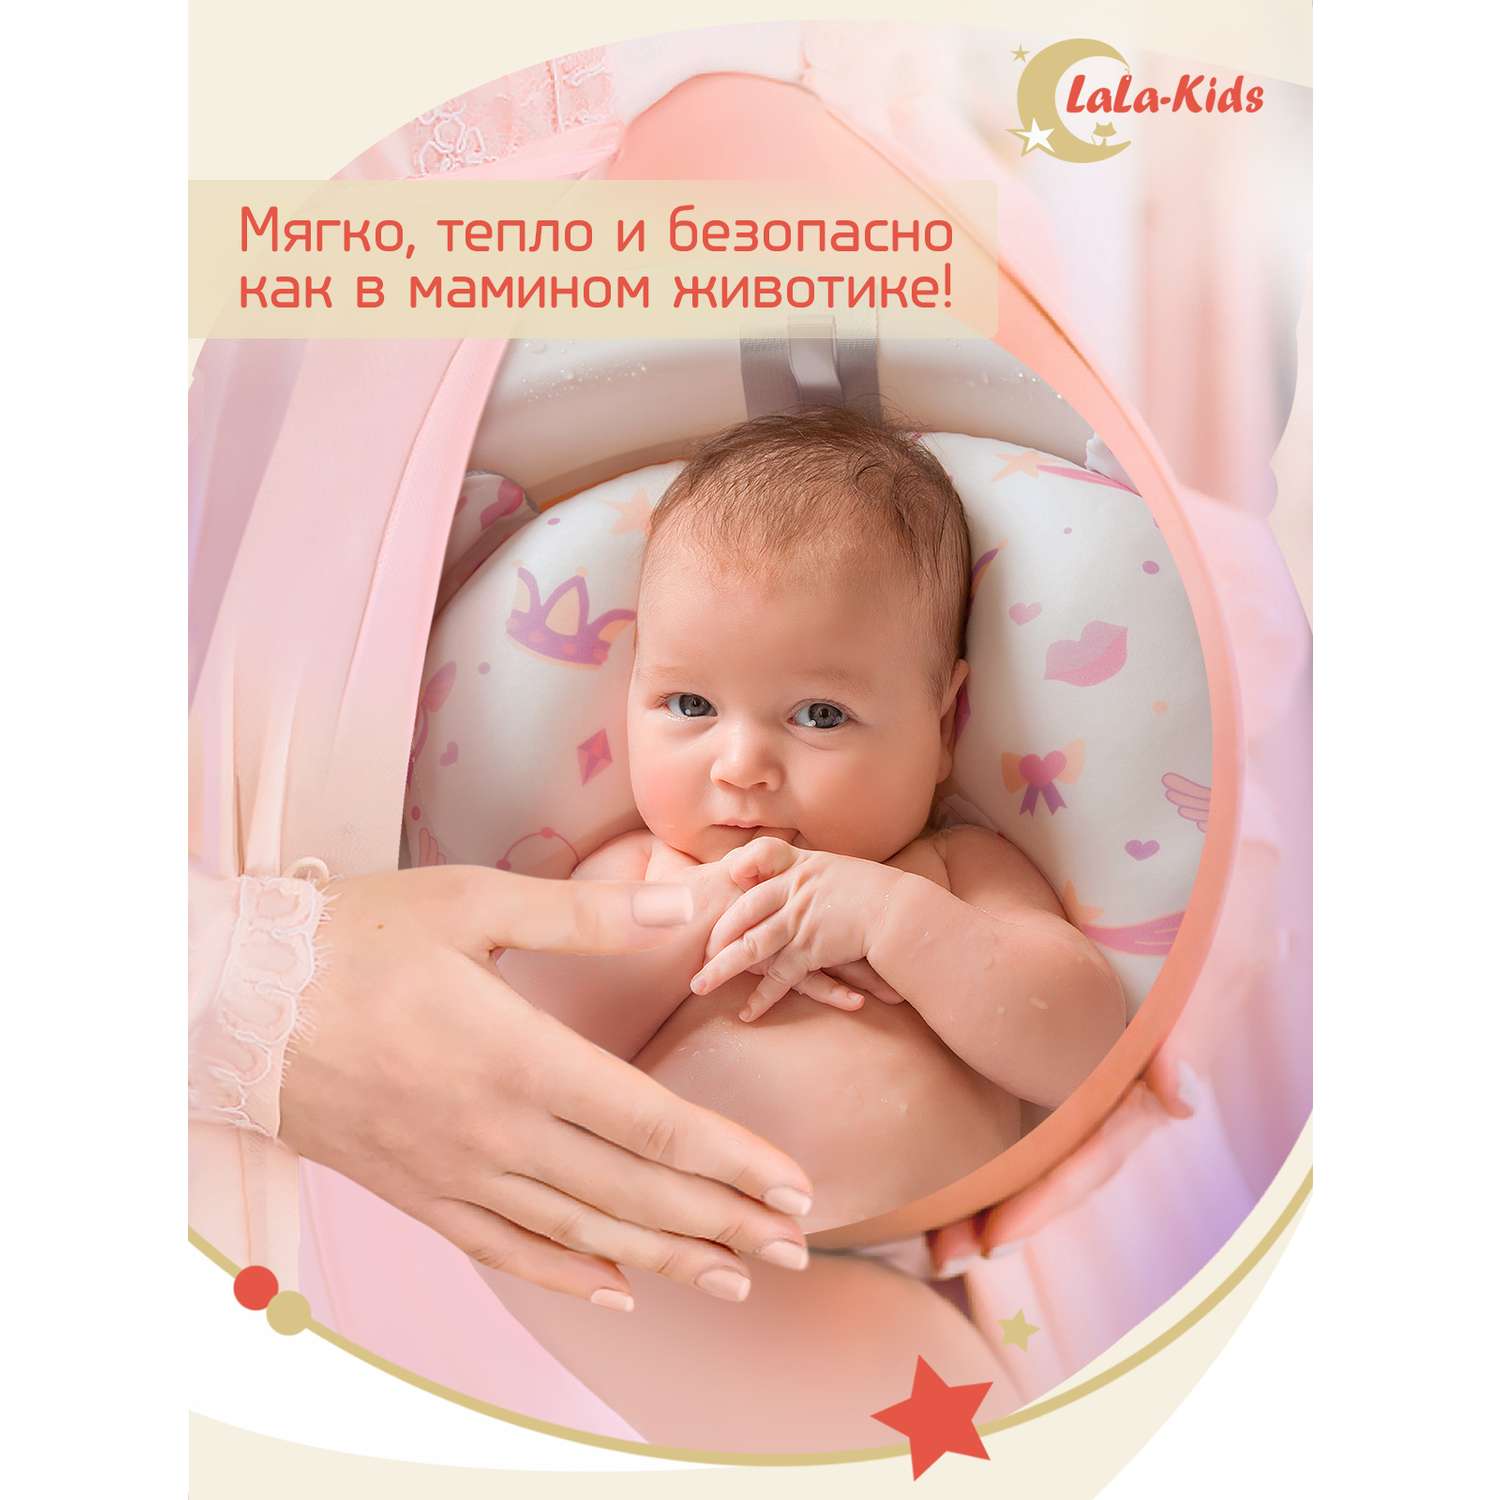 Ванночка для новорожденных LaLa-Kids складная с матрасиком и термометром в комплекте - фото 13